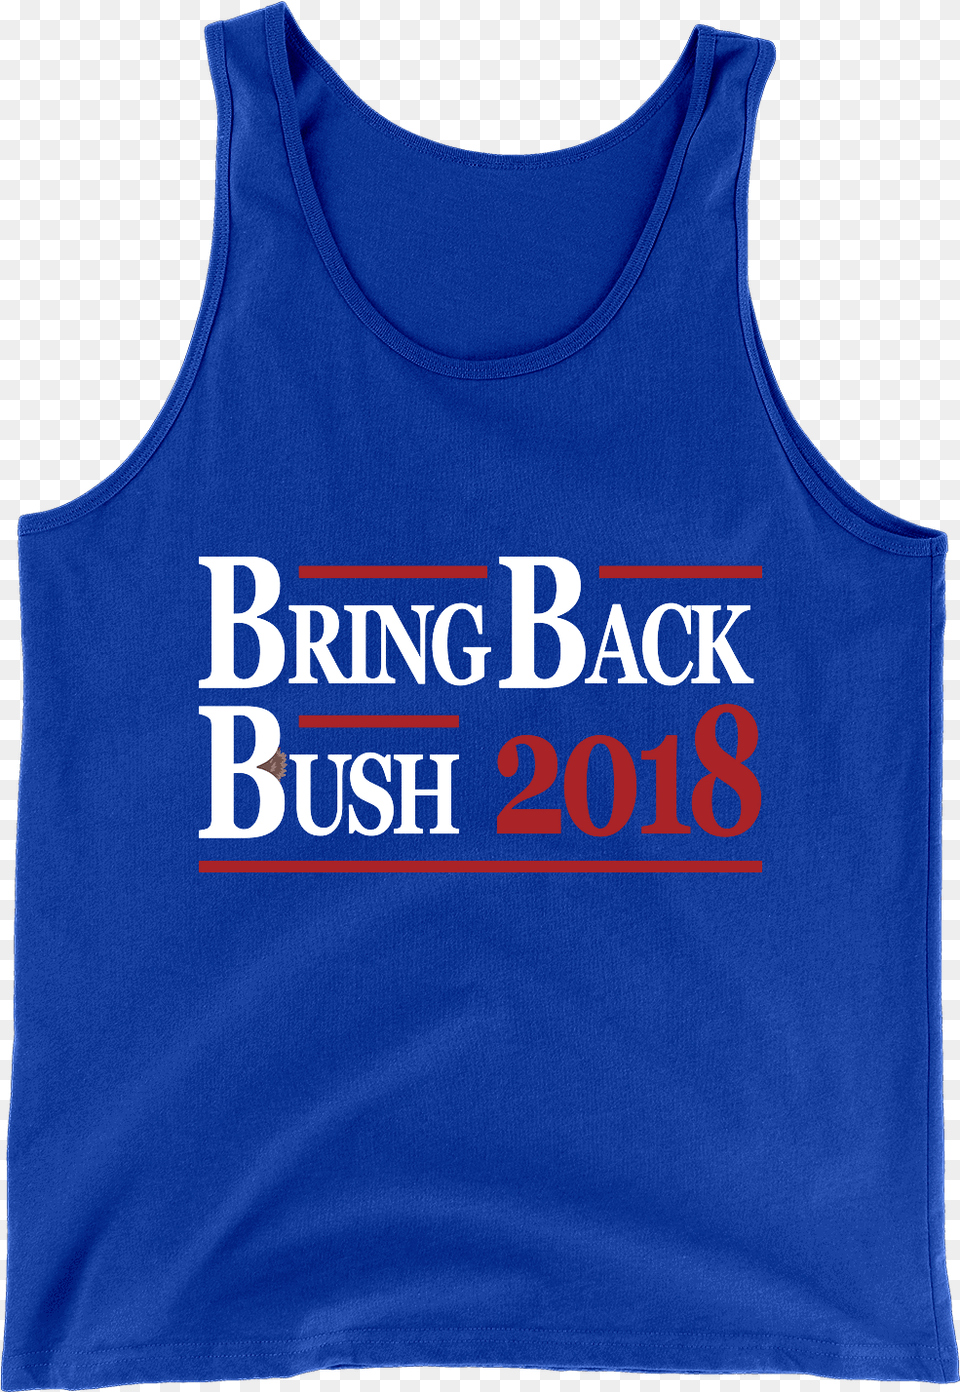 Bring Back The Bush Baby Active Tank, Clothing, Tank Top, Shirt Png Image